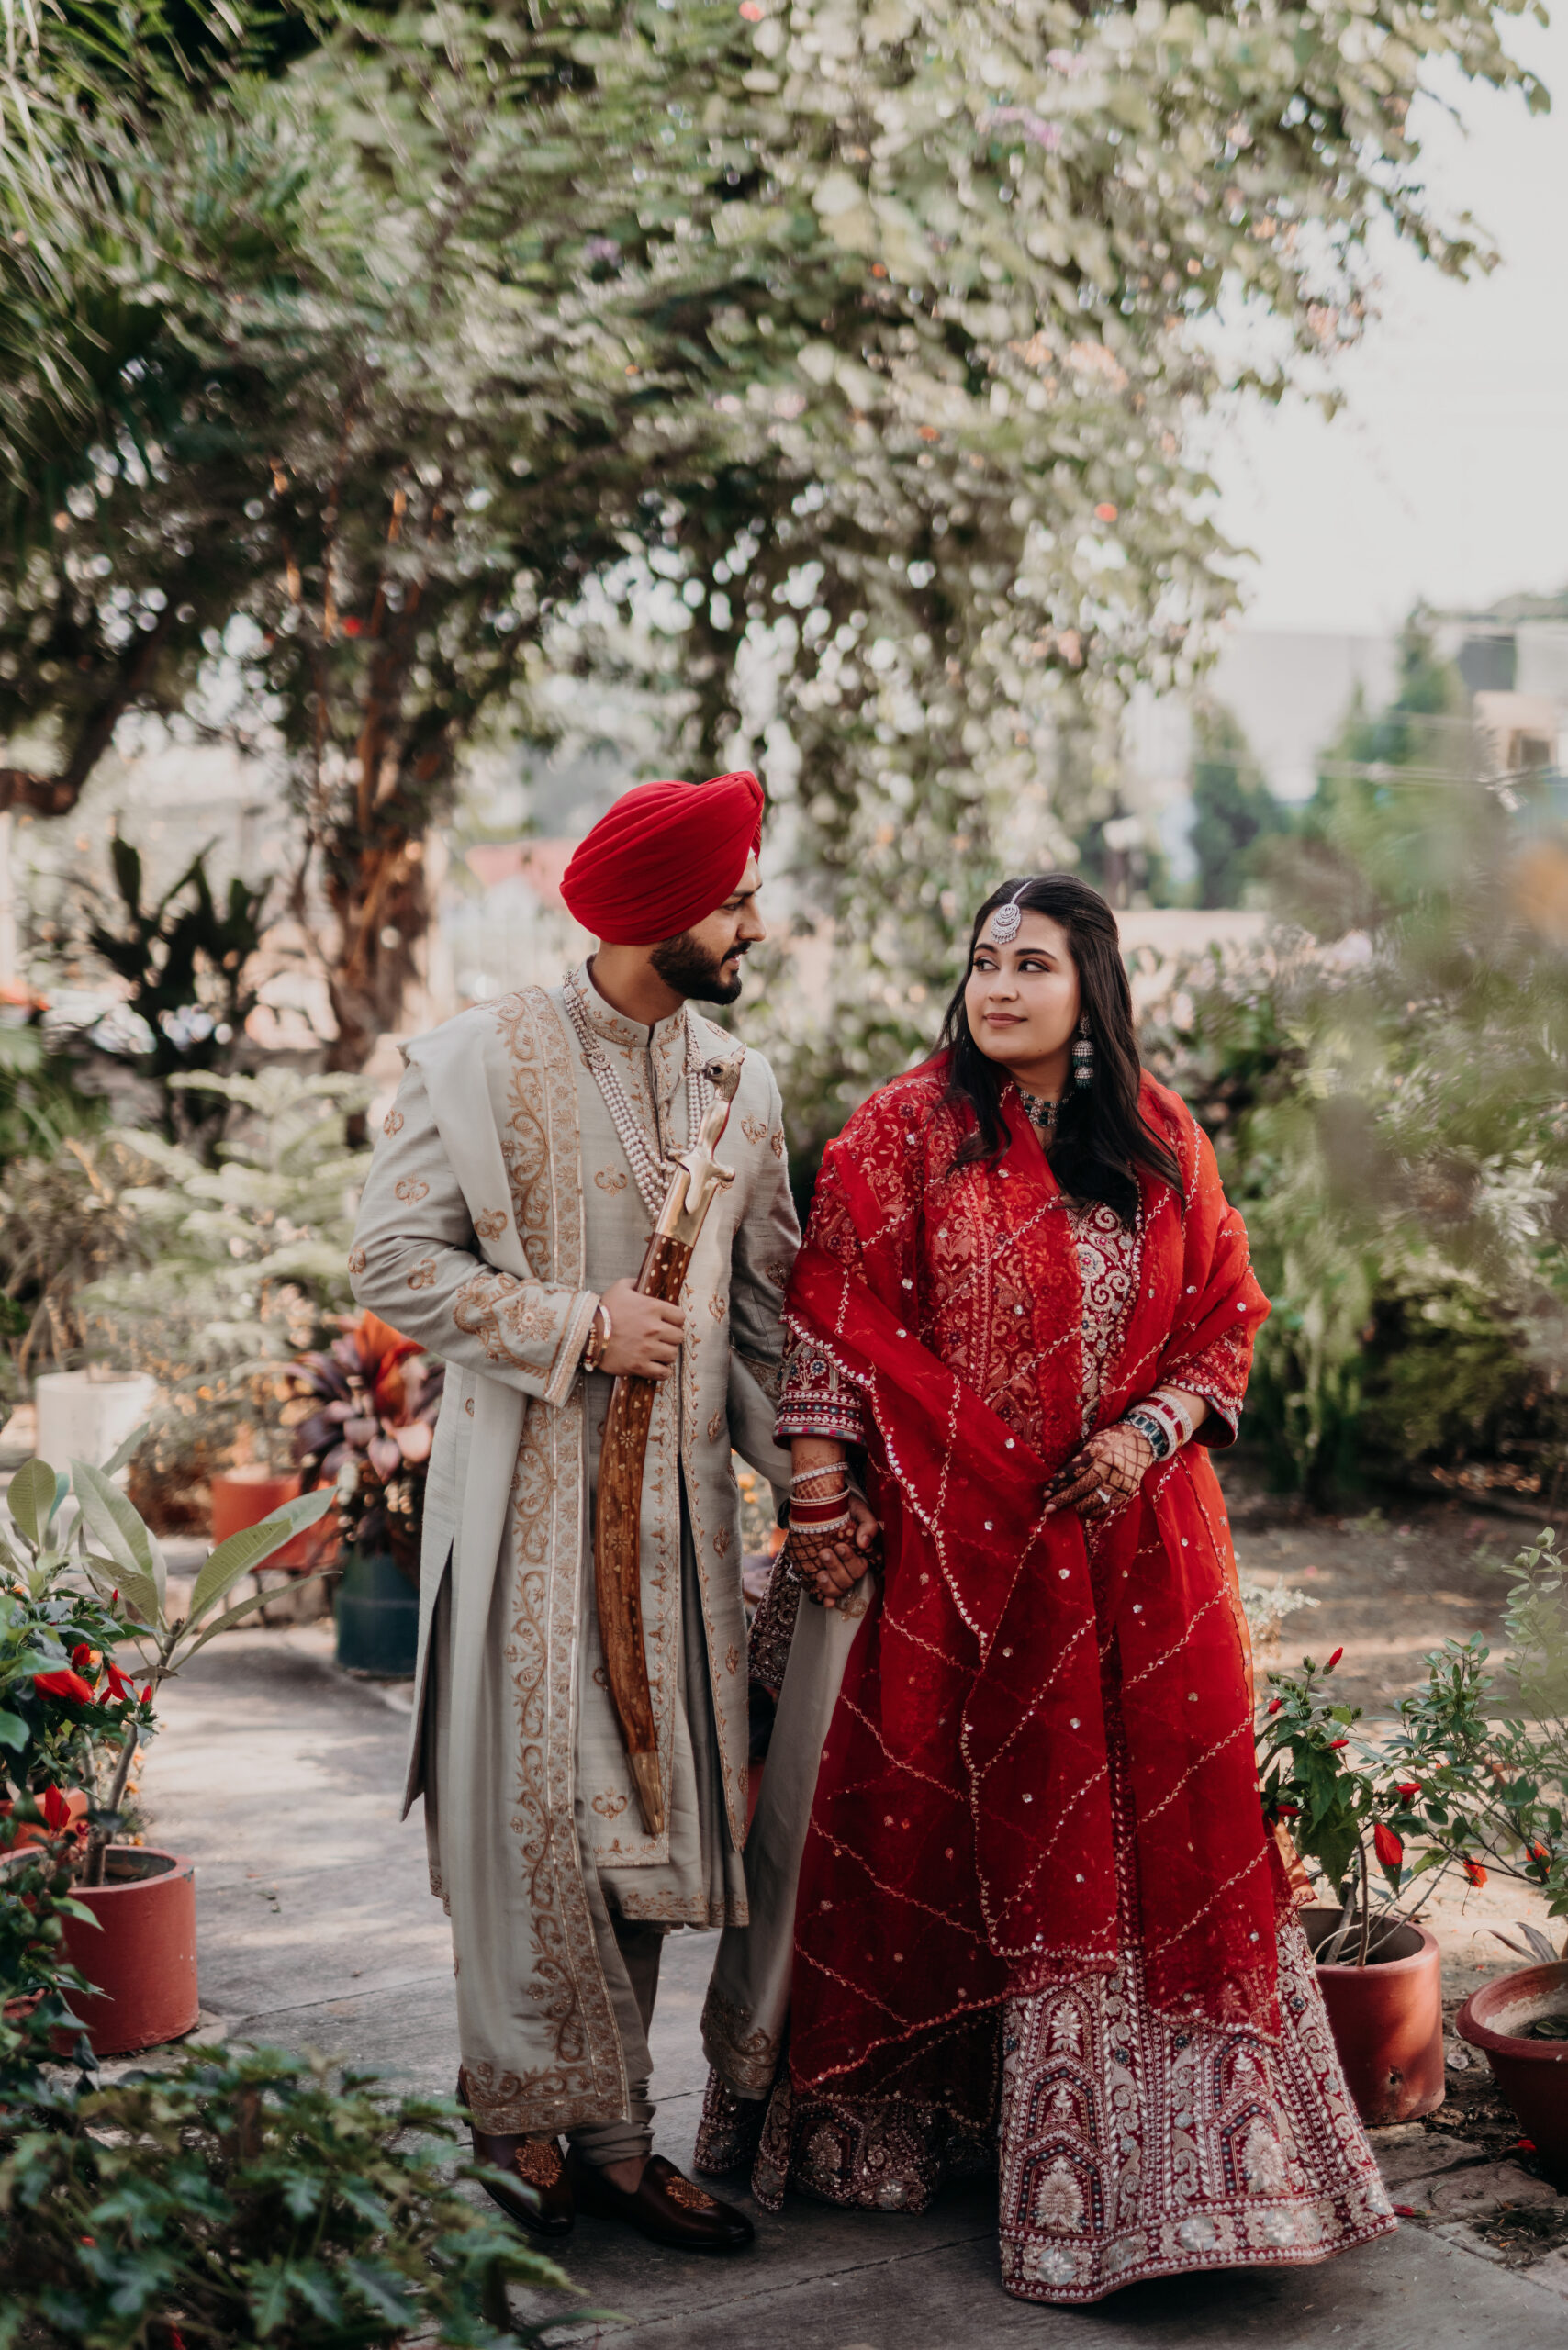 Latest Indian wedding couple photography poses 2022 | Latest Photoshoot |  Dulha Dulhan Photo poses - YouTube